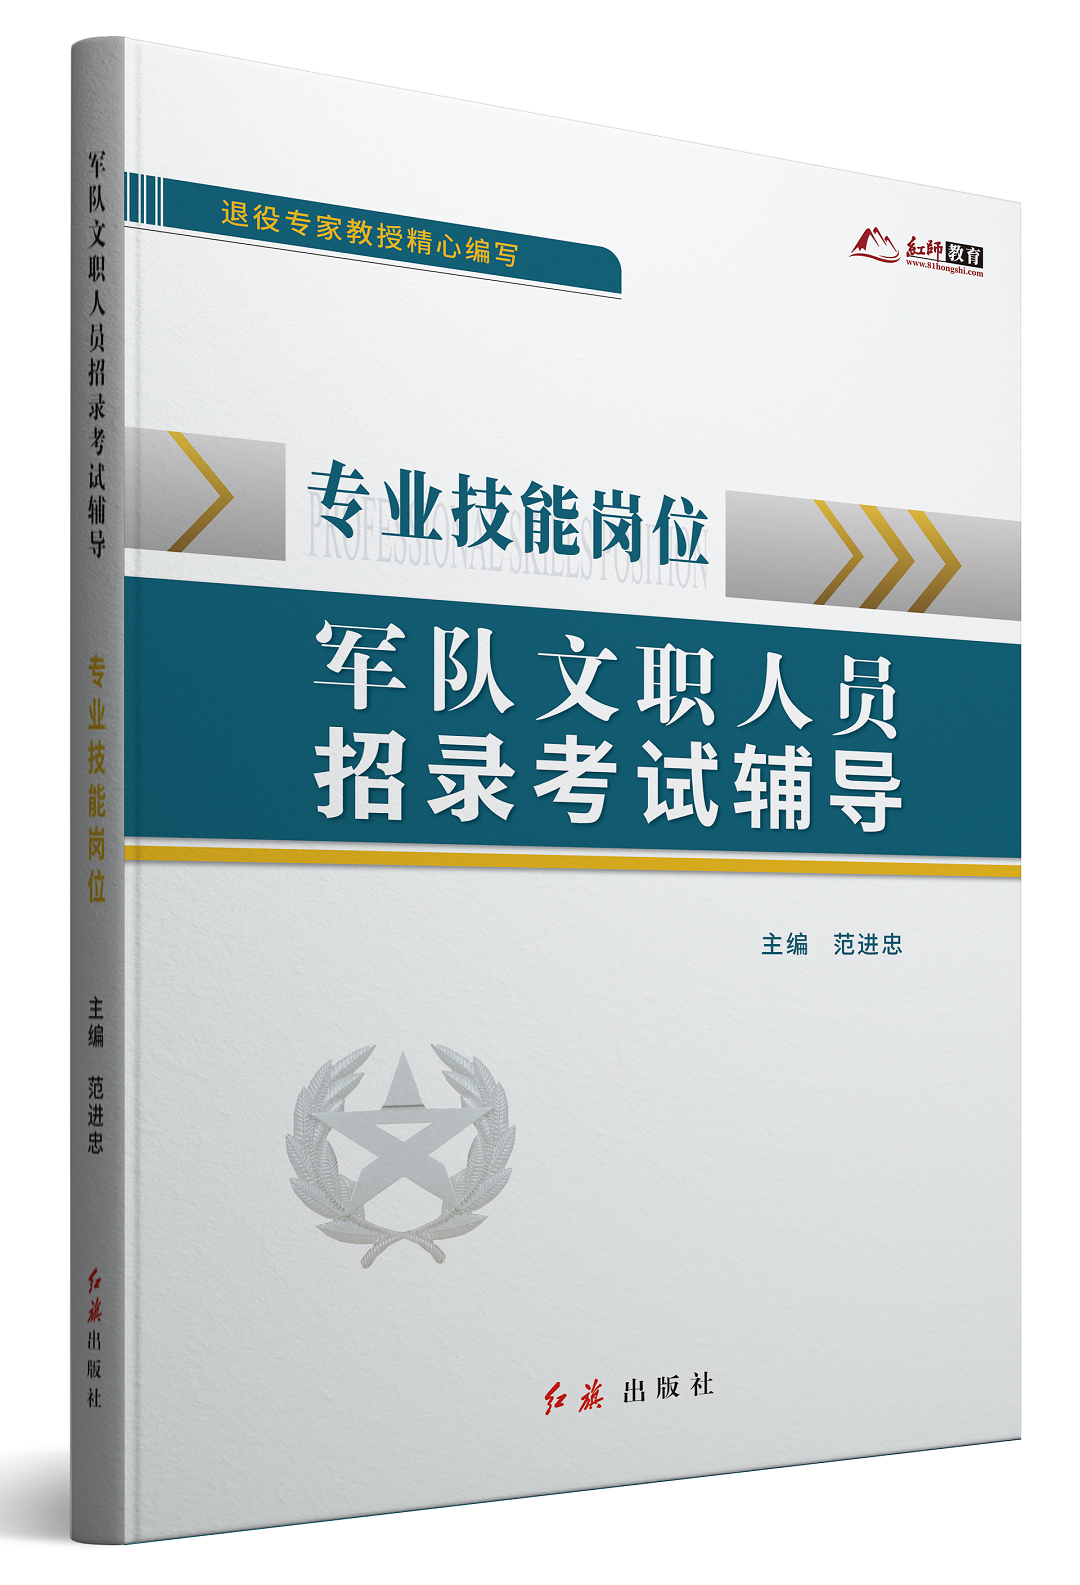 《专业技能岗位军队文职招录考试辅导》正式出版,限量赠送300册